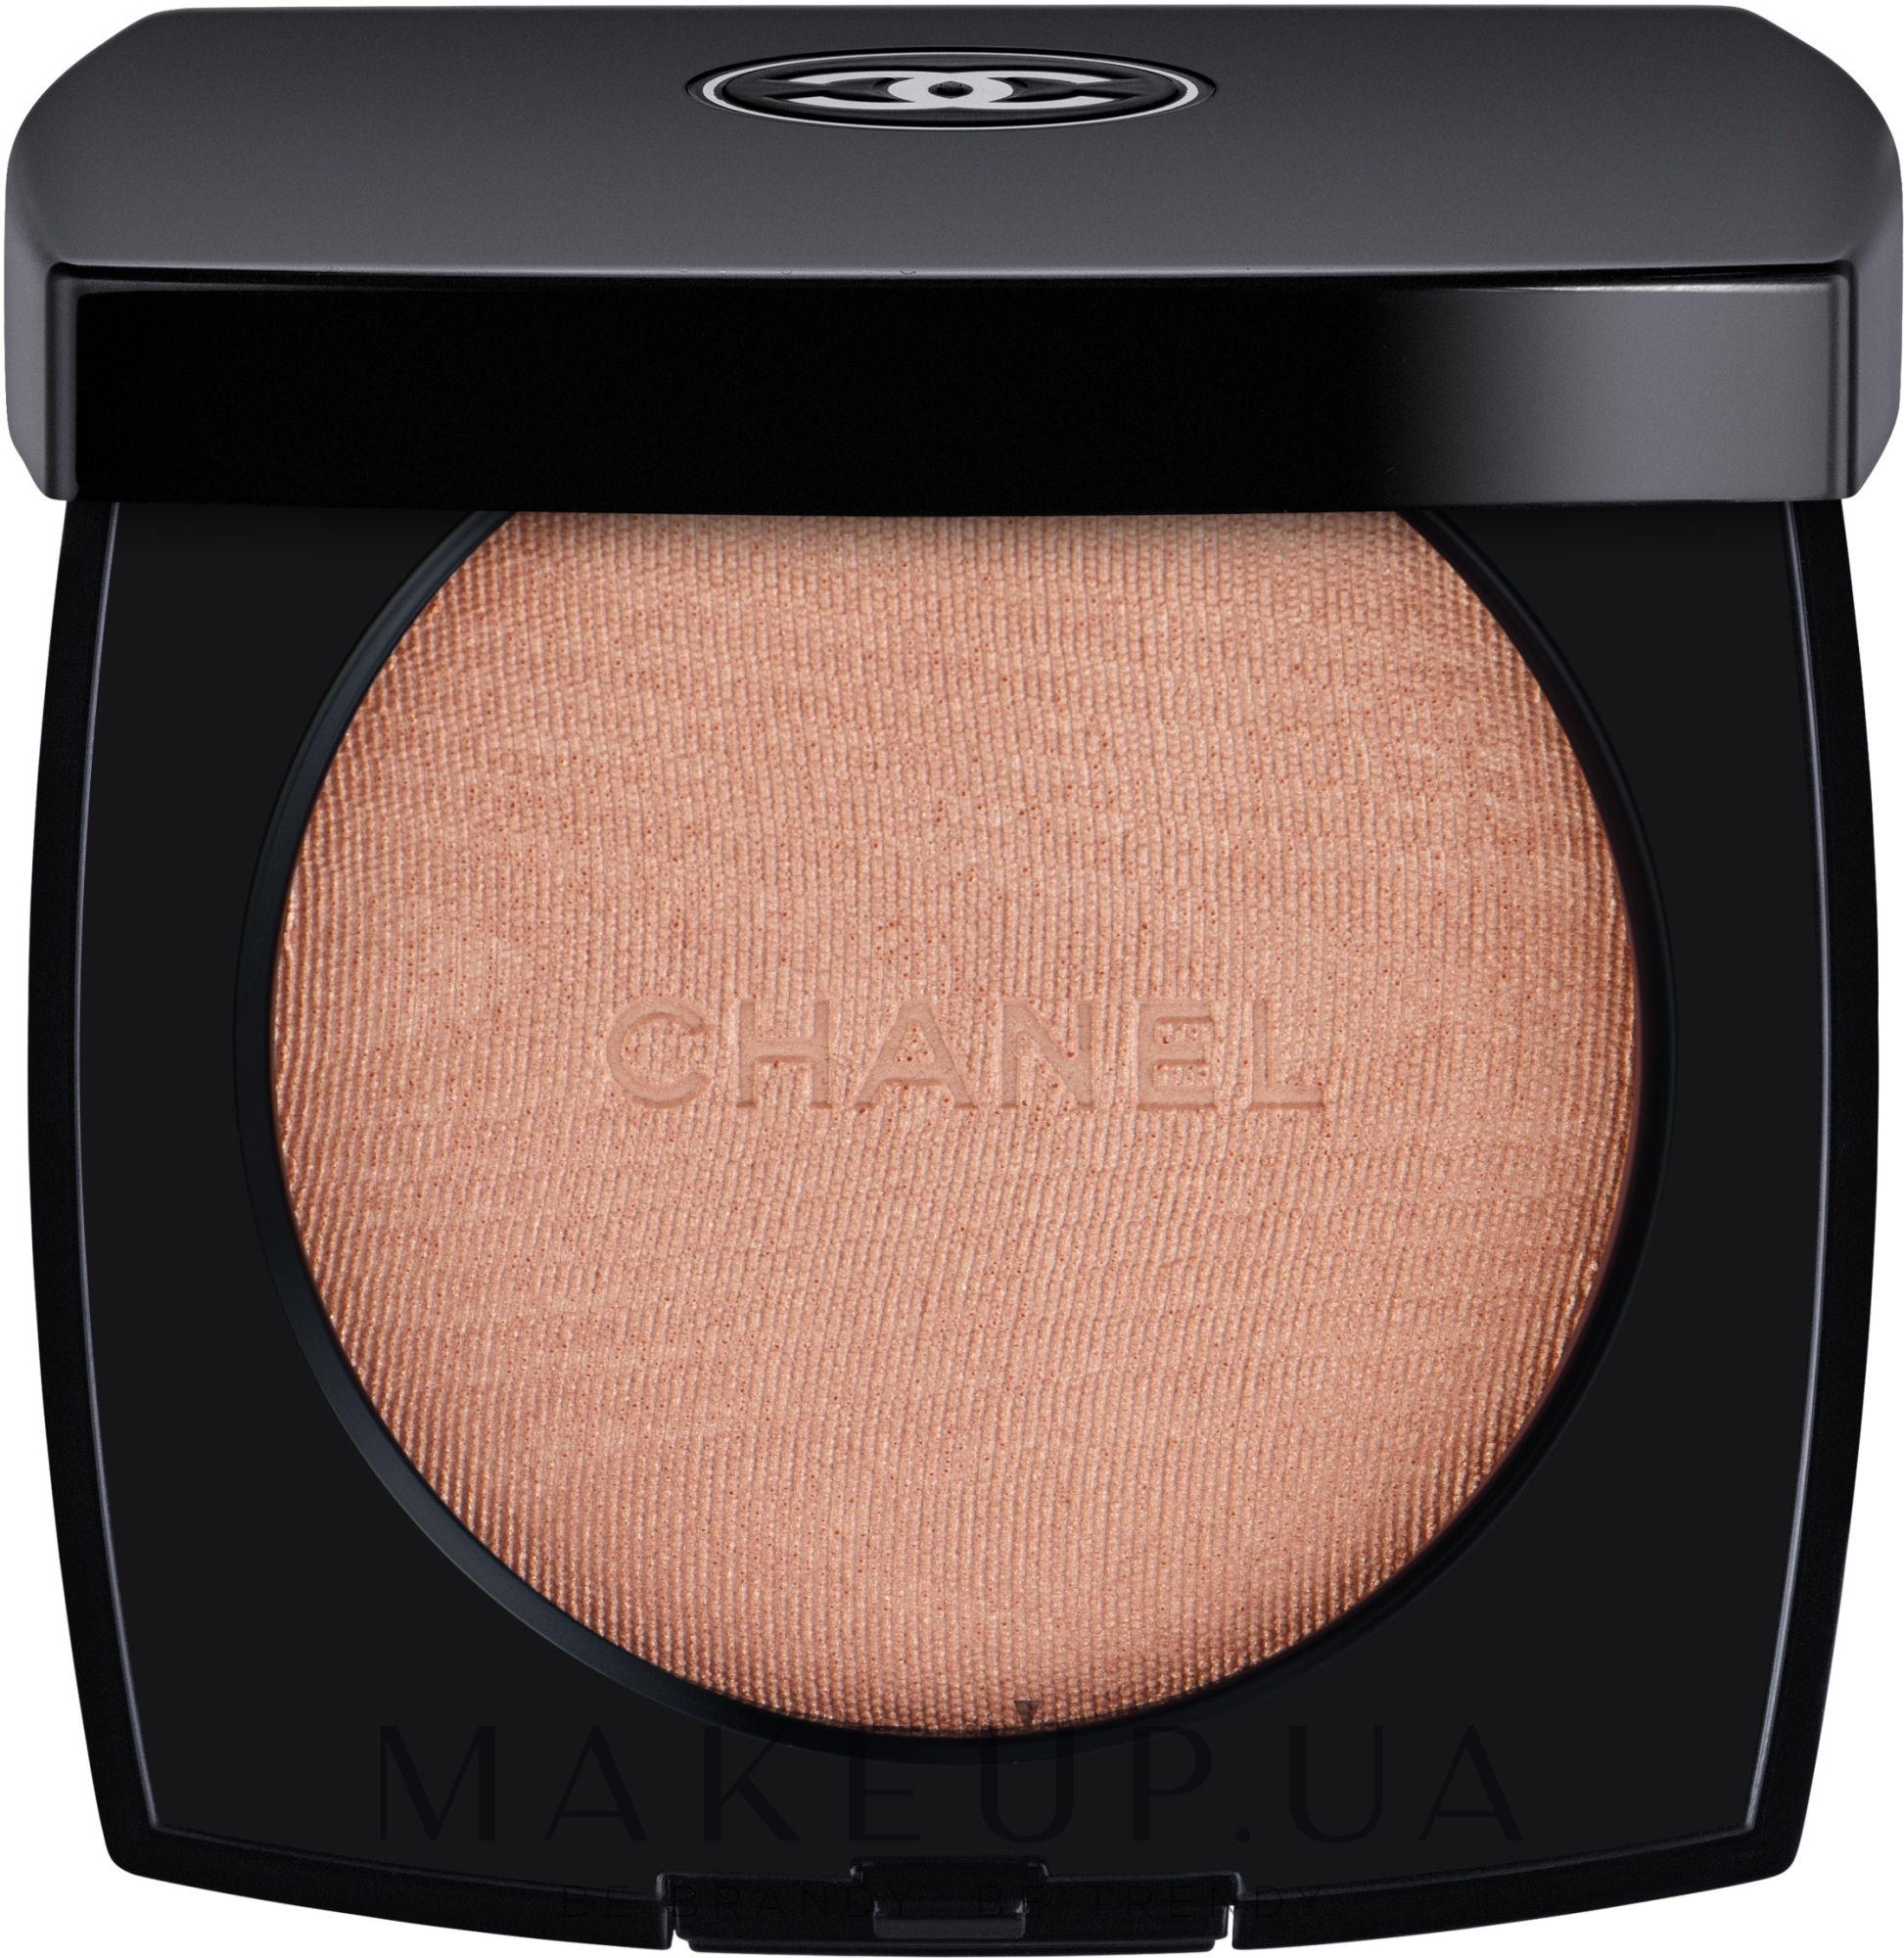 Мерехтлива пудра-хайлайтер - Chanel Poudre Lumiere Highlighting Powder — фото 30 - Rosy Gold